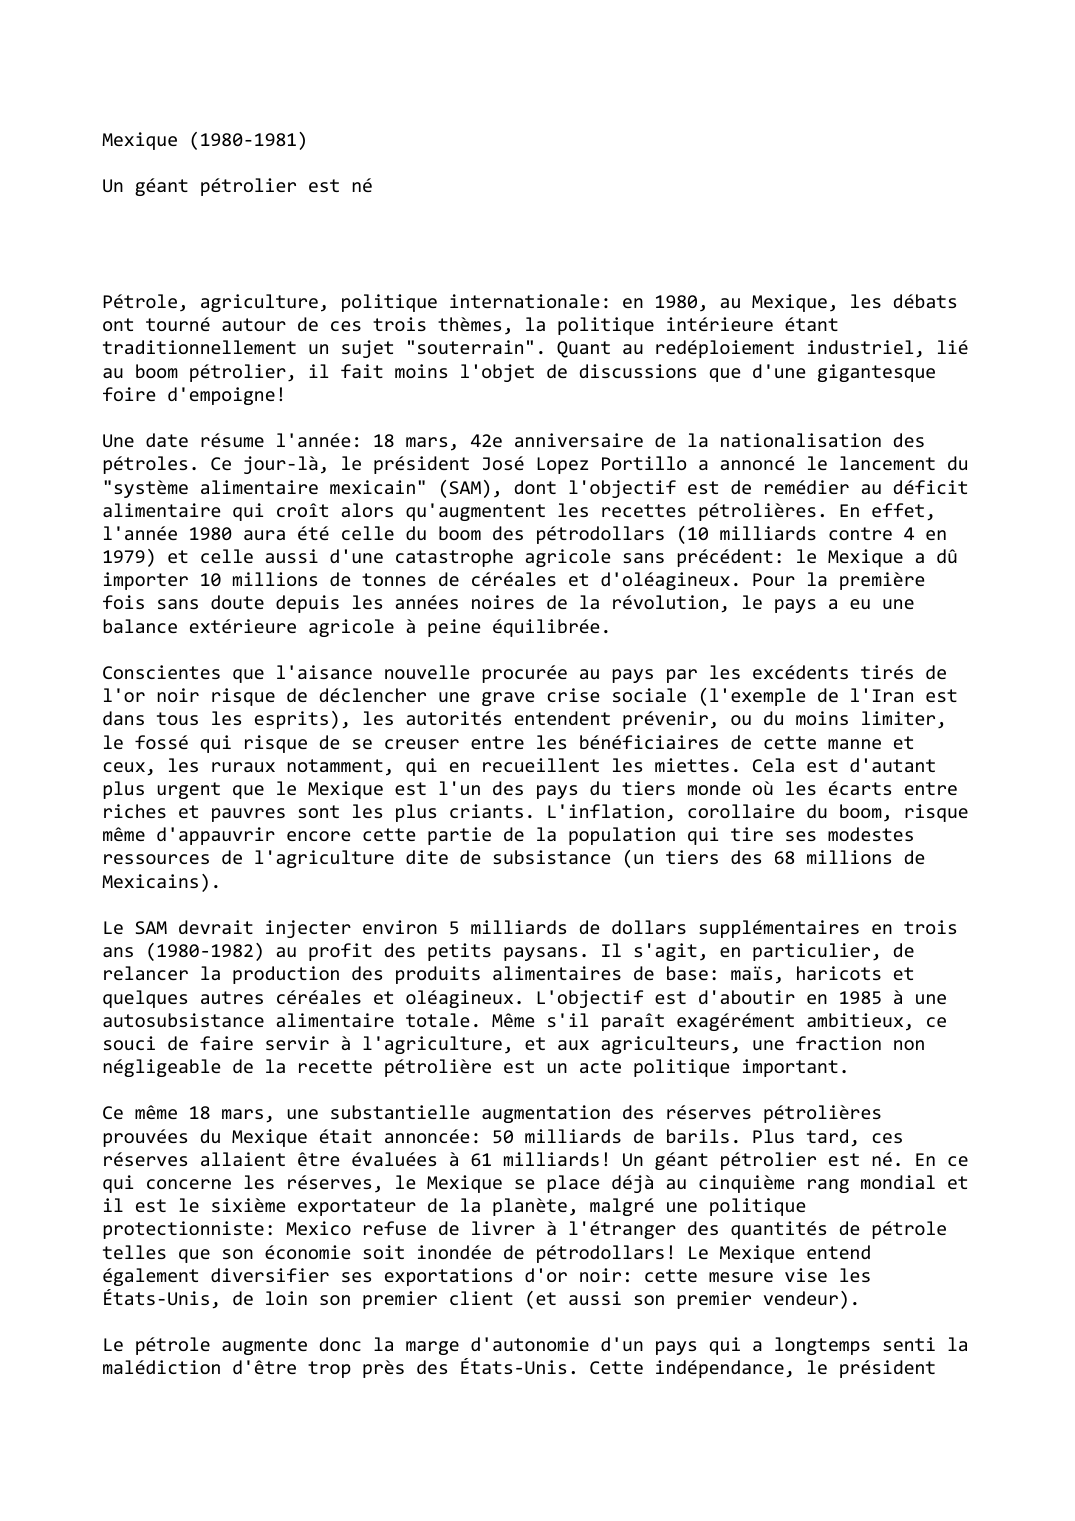 Prévisualisation du document Mexique (1980-1981)

Un géant pétrolier est né